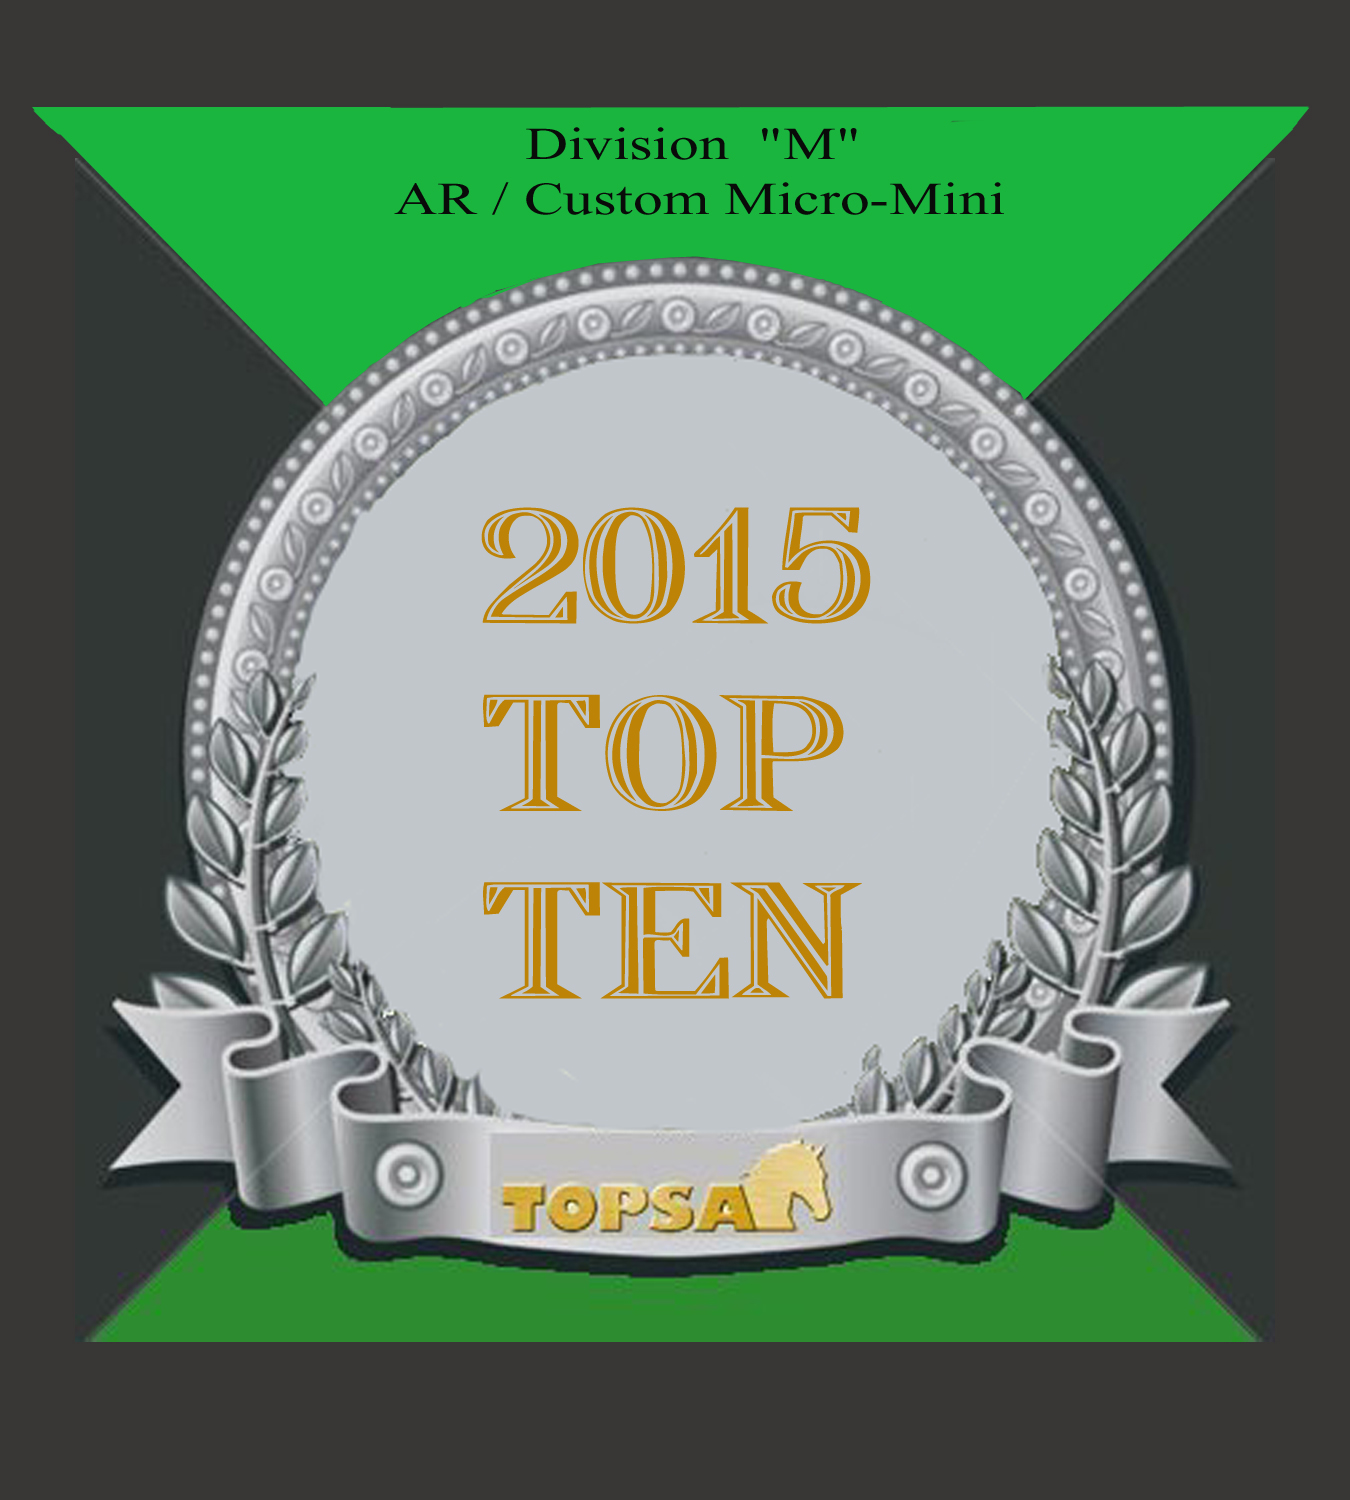 TOPSA Top Ten